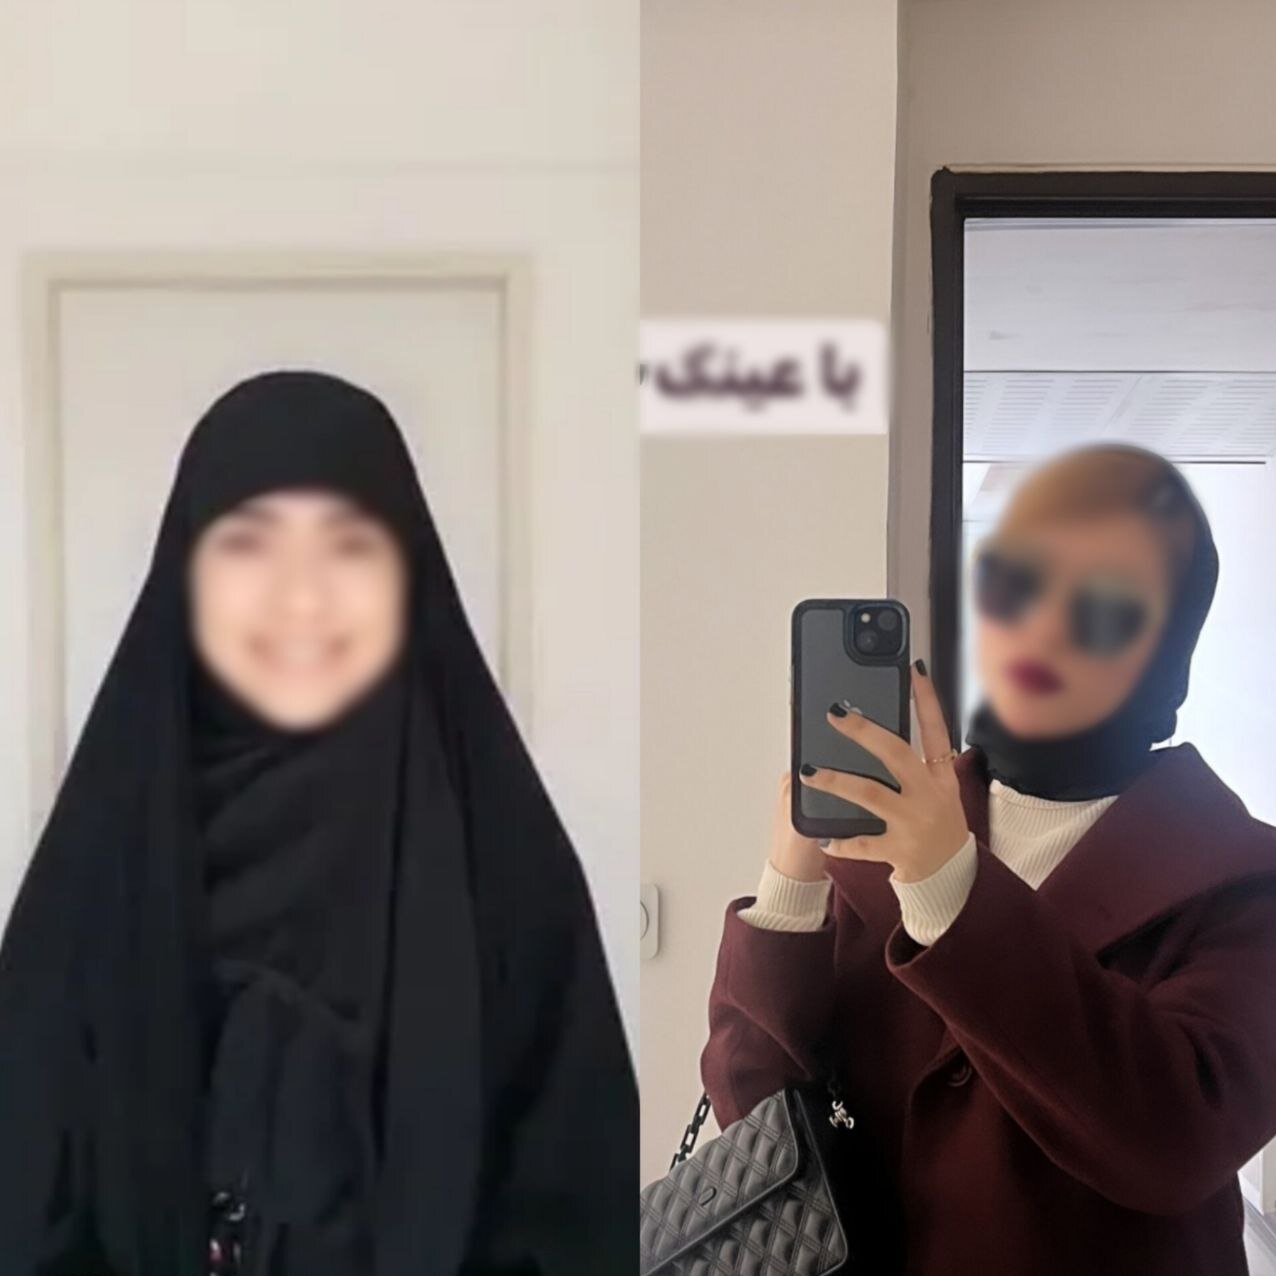 ماجرای جدید پاساژگردی حجاب استایل ها در کربلا | از ترویج پوشیدن عبا در اربعین تا خودنمایی با آرایش غلیظ در بین الحرمین! | واکنش مداح معروف را ببینید